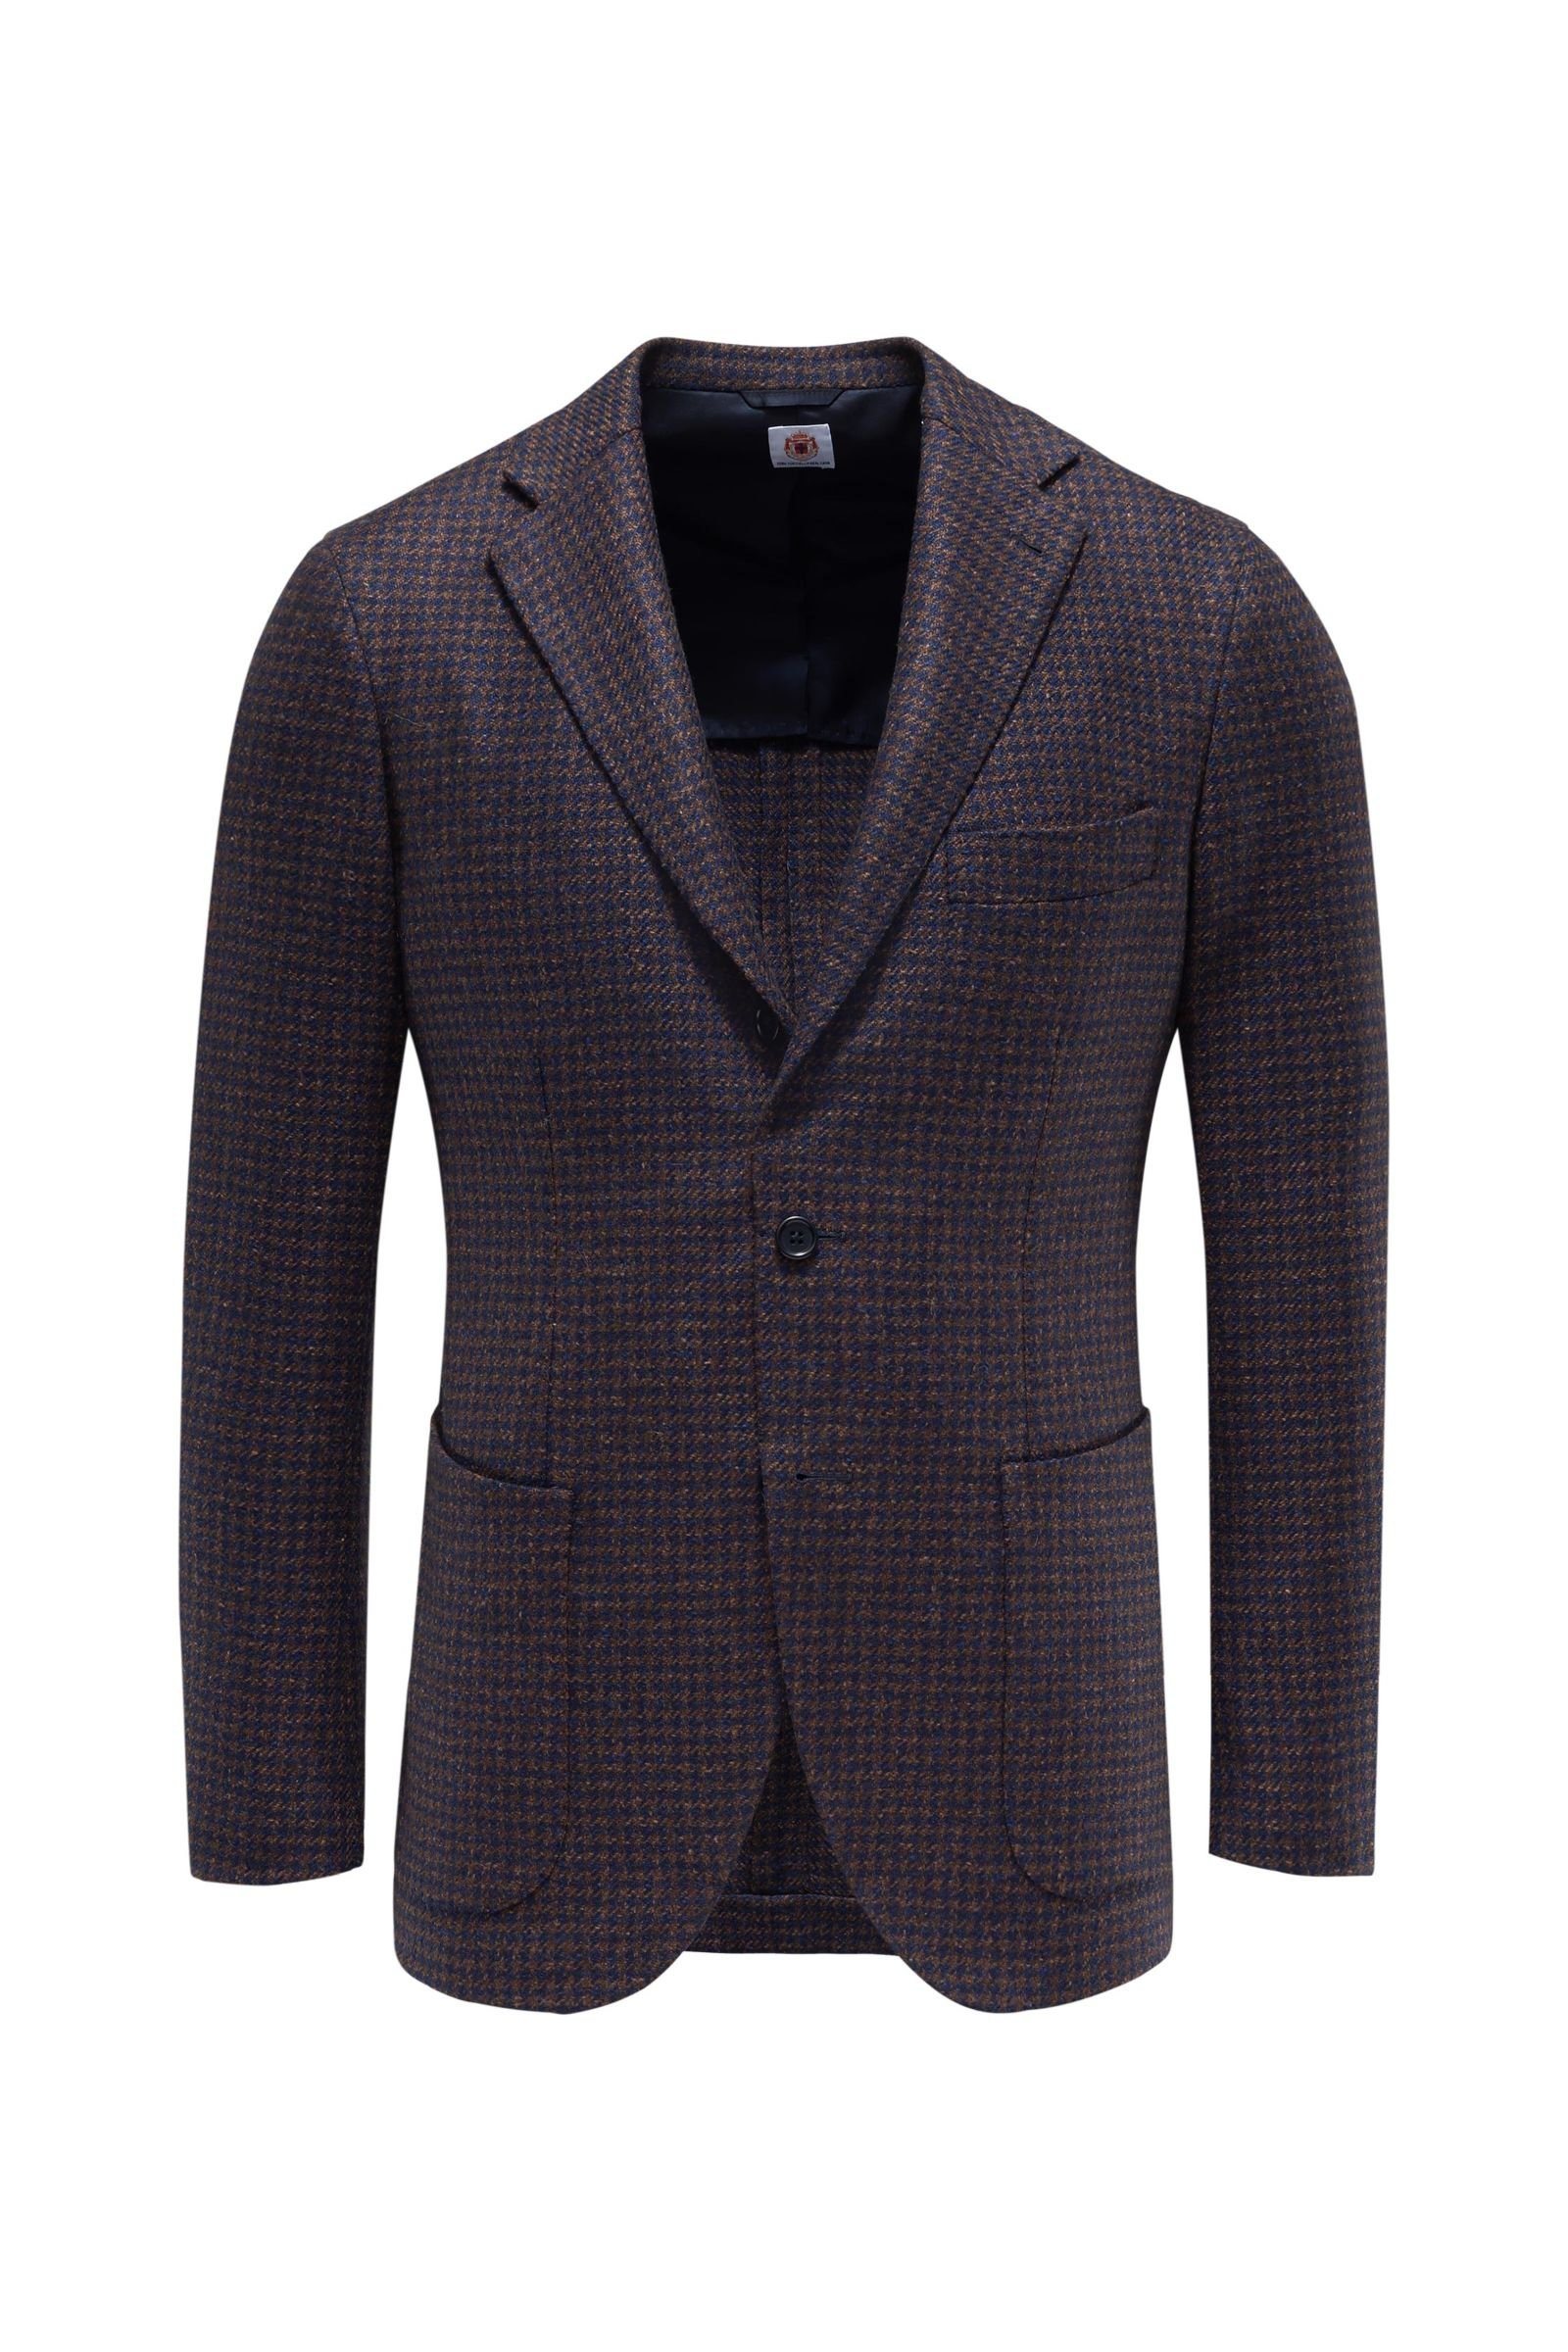 Smart-casual jacket 'Salina' navy/brown checked